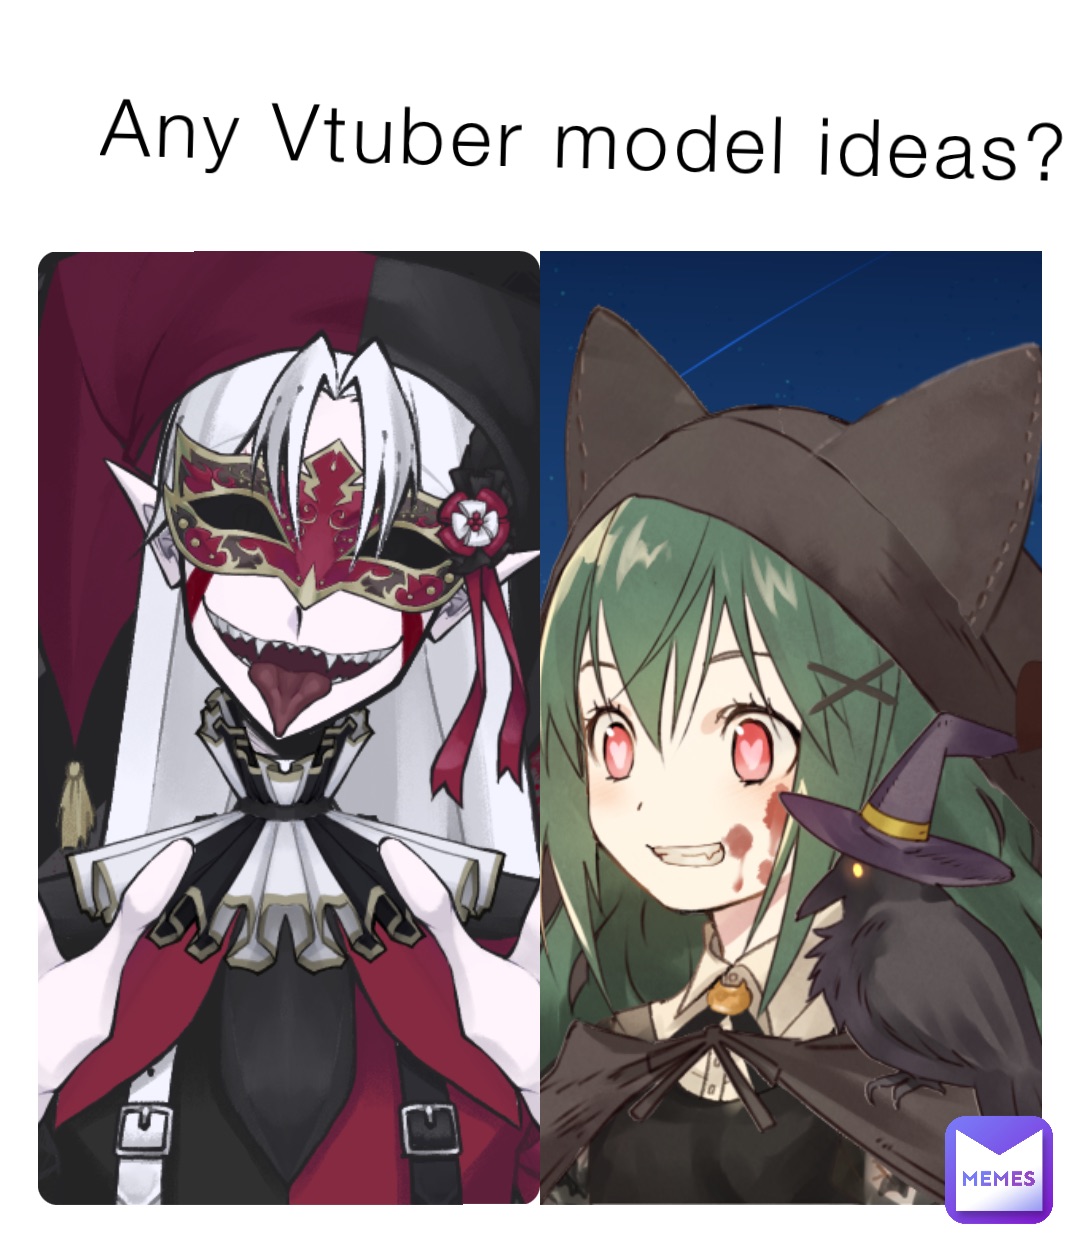 Any Vtuber model ideas?